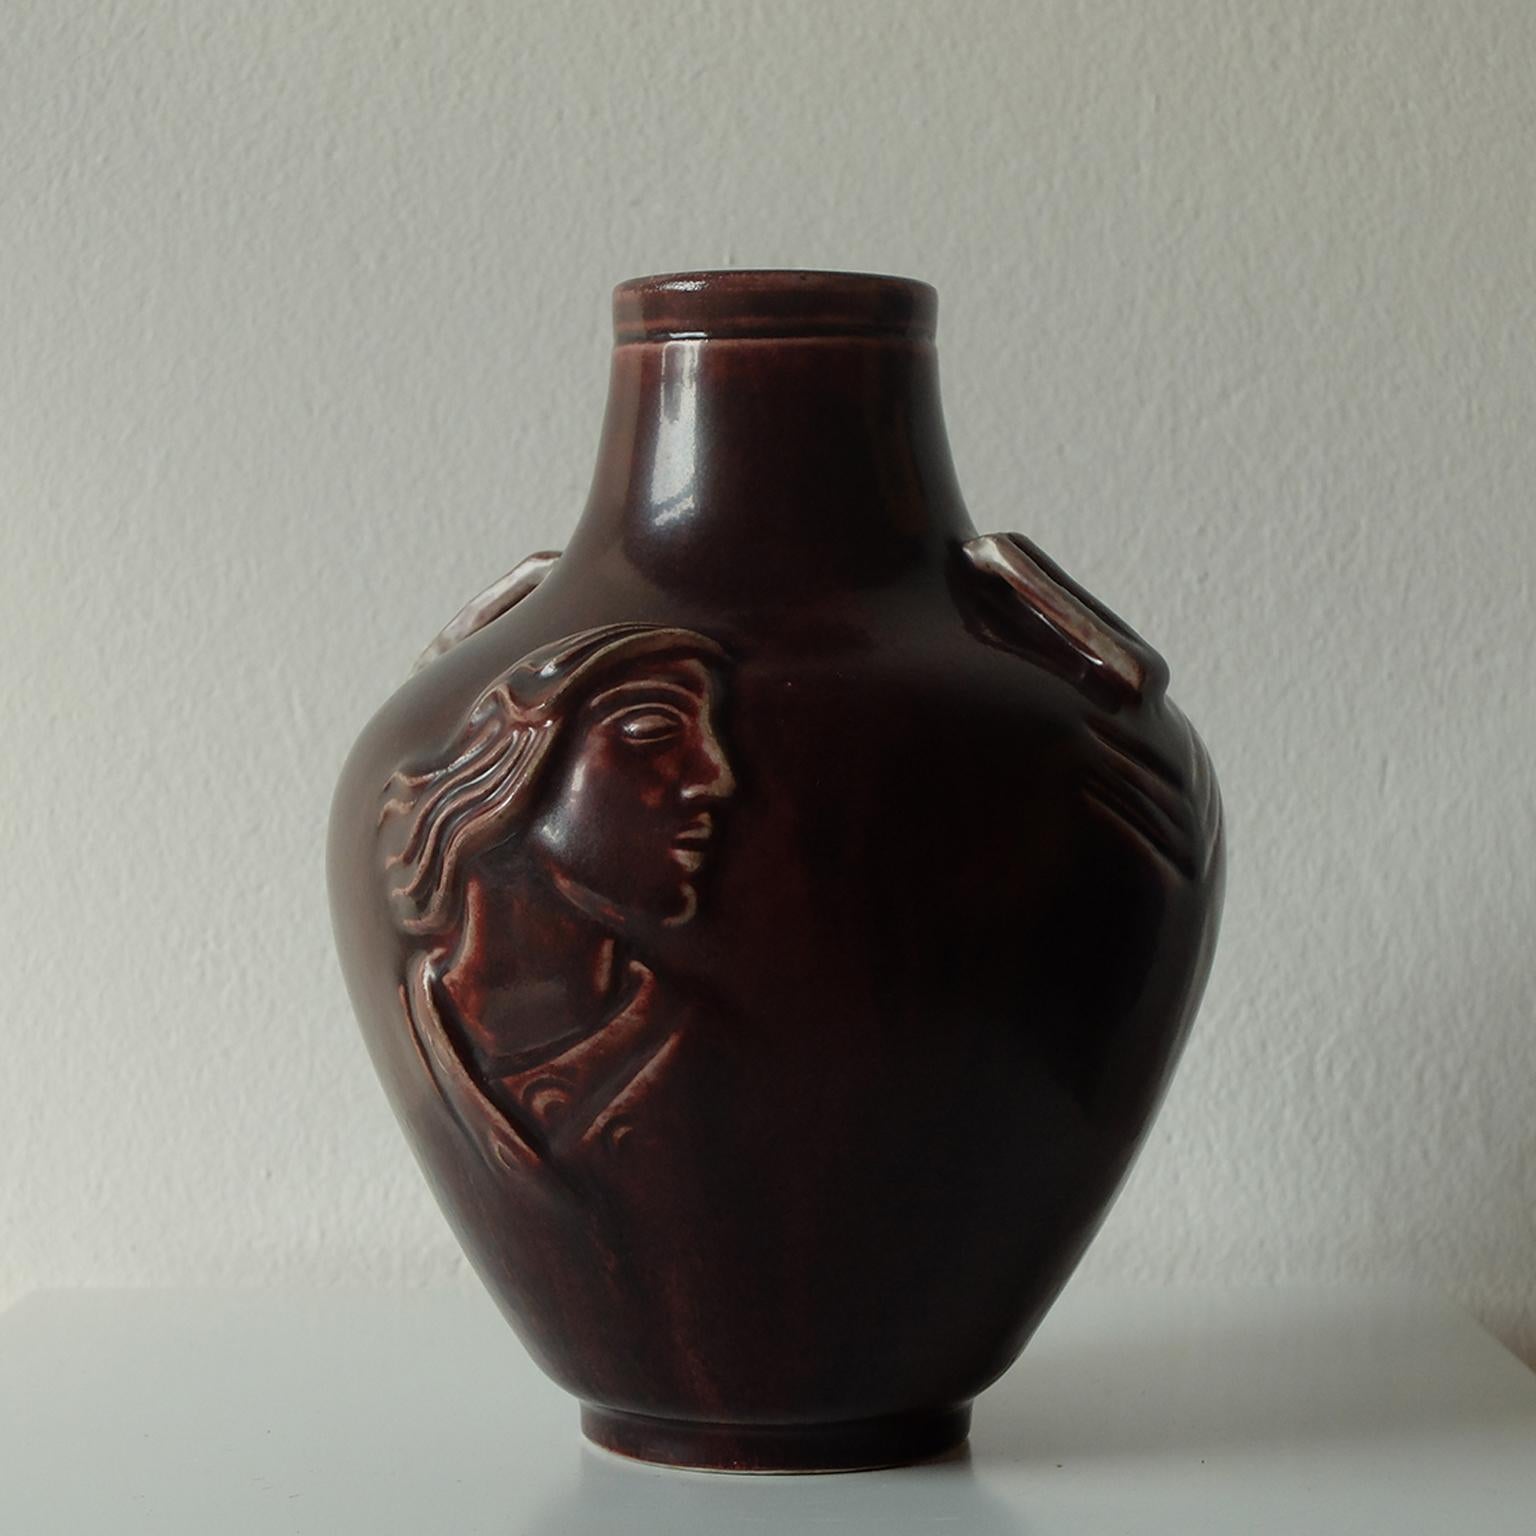 Jais Nielsen pour Royal Copenhagen, vase en céramique à glaçure sang de boeuf représentant deux personnages évangéliques, années 1930.

Cette pièce est un excellent exemple de poterie scandinave classique et danoise du milieu du siècle, présentant